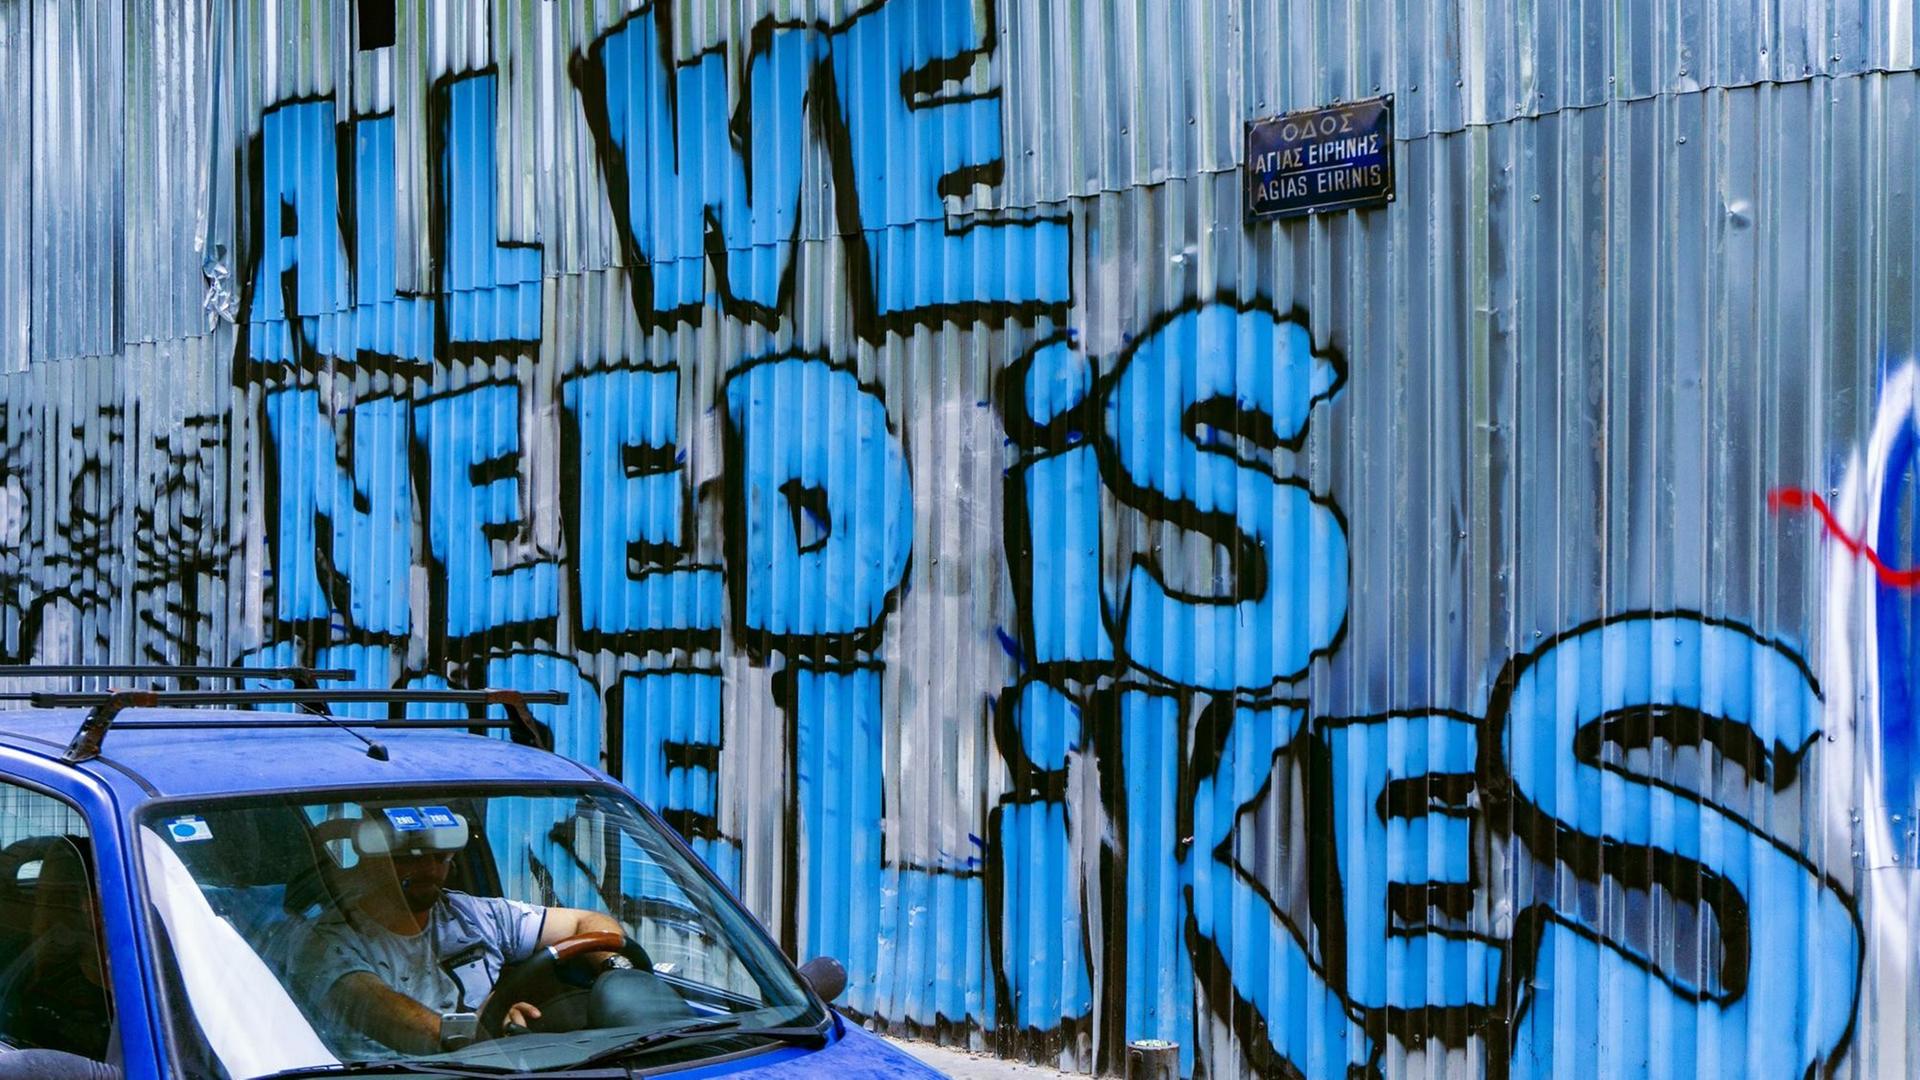 Ein Auto passiert eine Wellblechwand mit einem Graffiti, das in großer blauer Schrift verkündet: "All We Need Is More Likes".